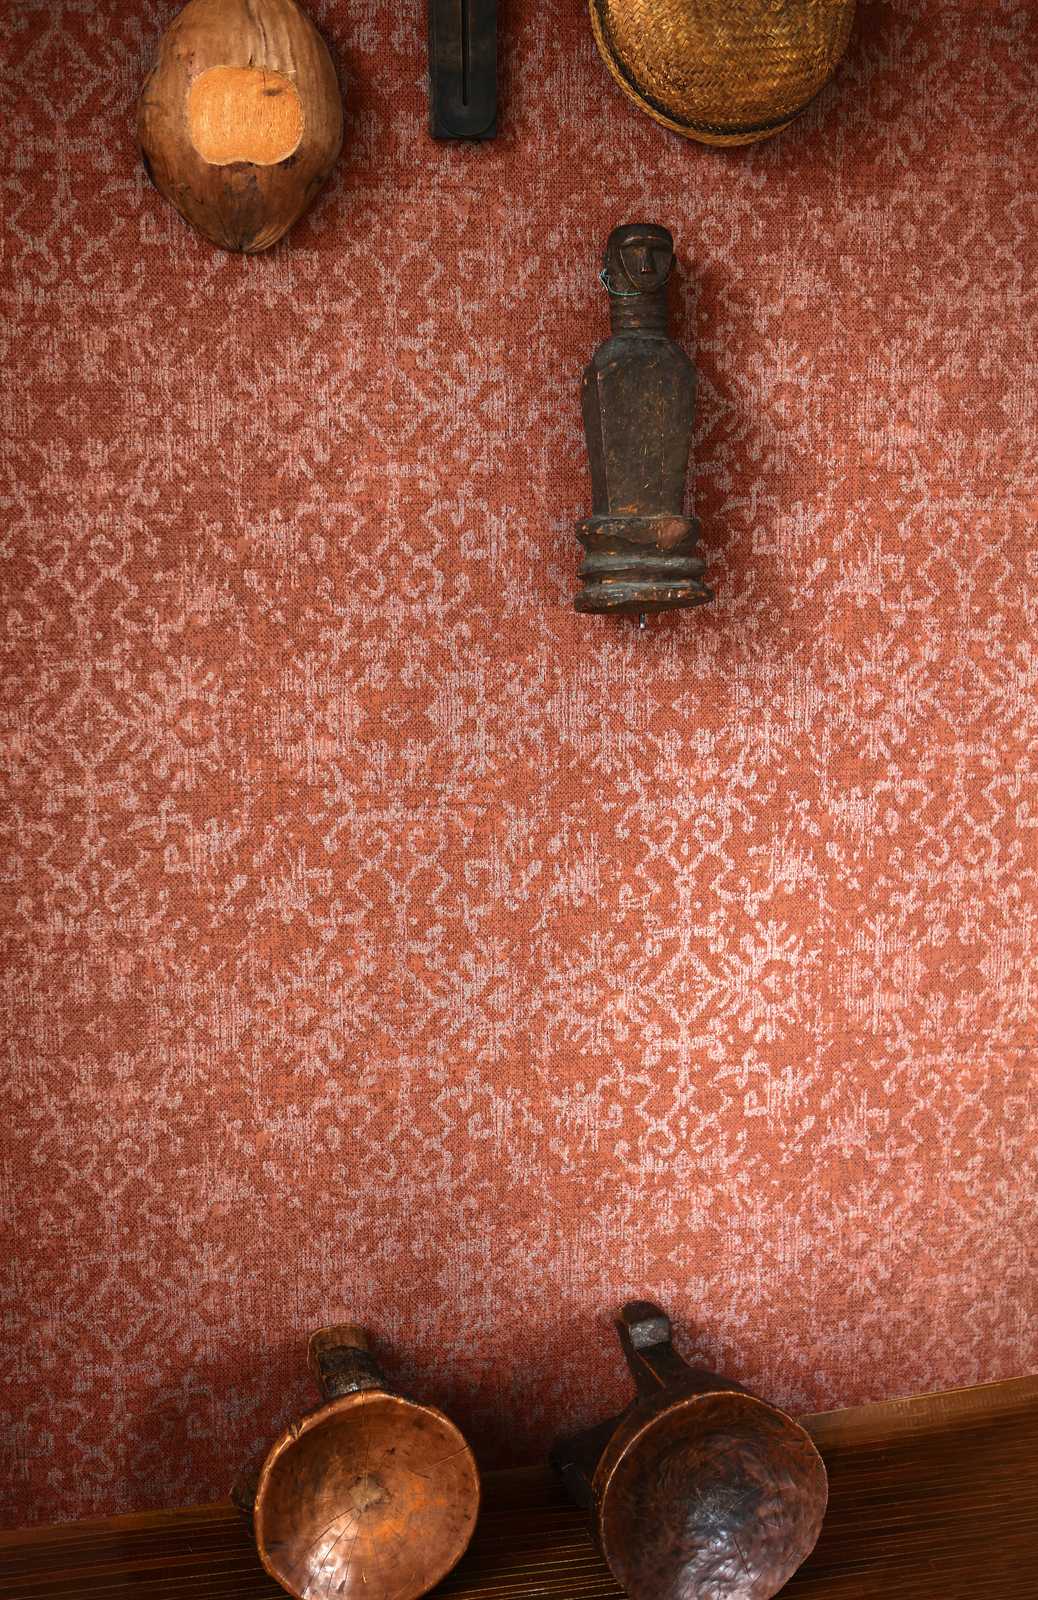             Behangornamentontwerp in Perzische tapijtlook
        